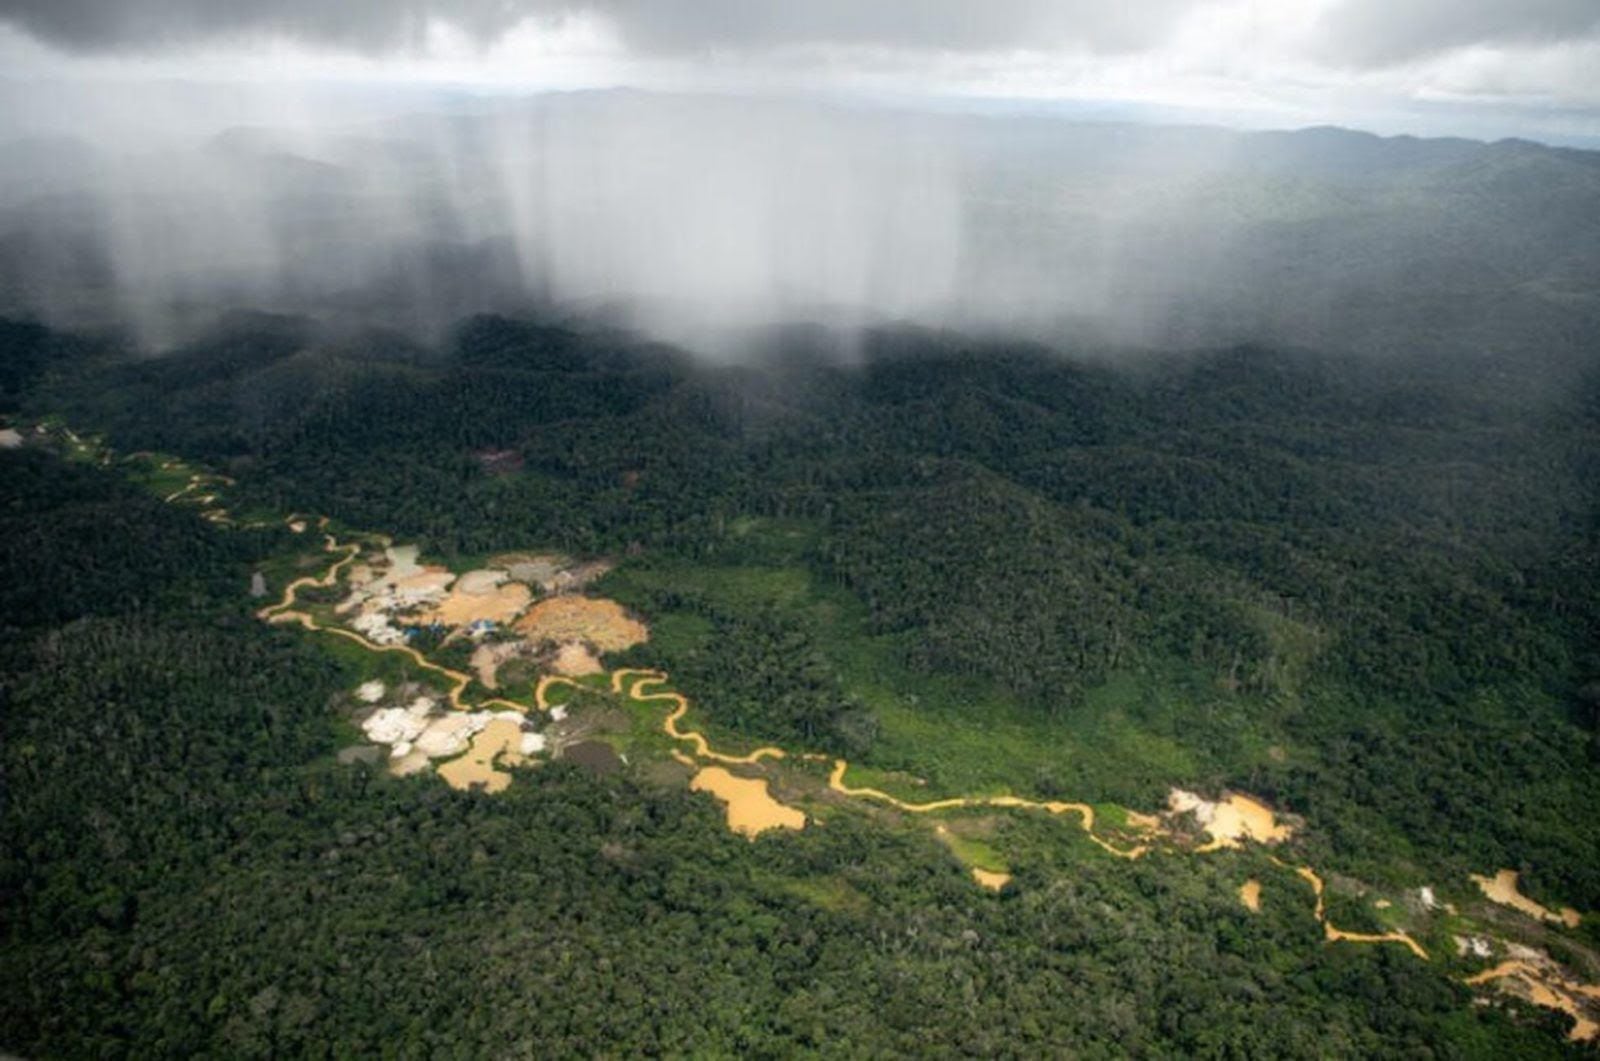 Sobrevoo registra áreas de garimpos ilegais dentro da TI Yanomami, em Roraima, em abril de 2021.